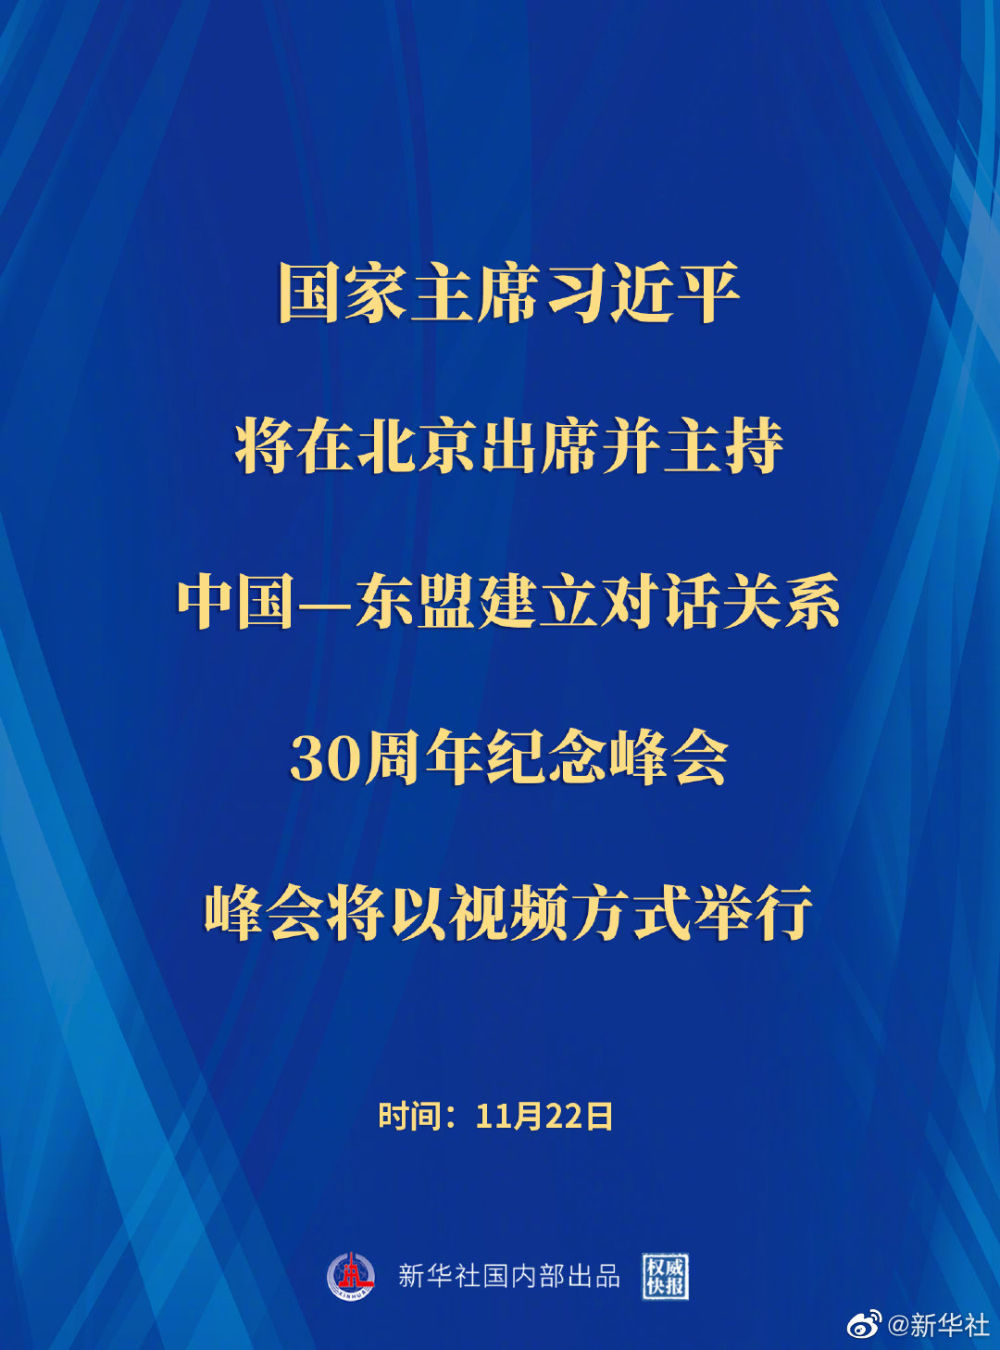 习近平将出席并主持中国—东盟建立对话关系30周年纪念峰会